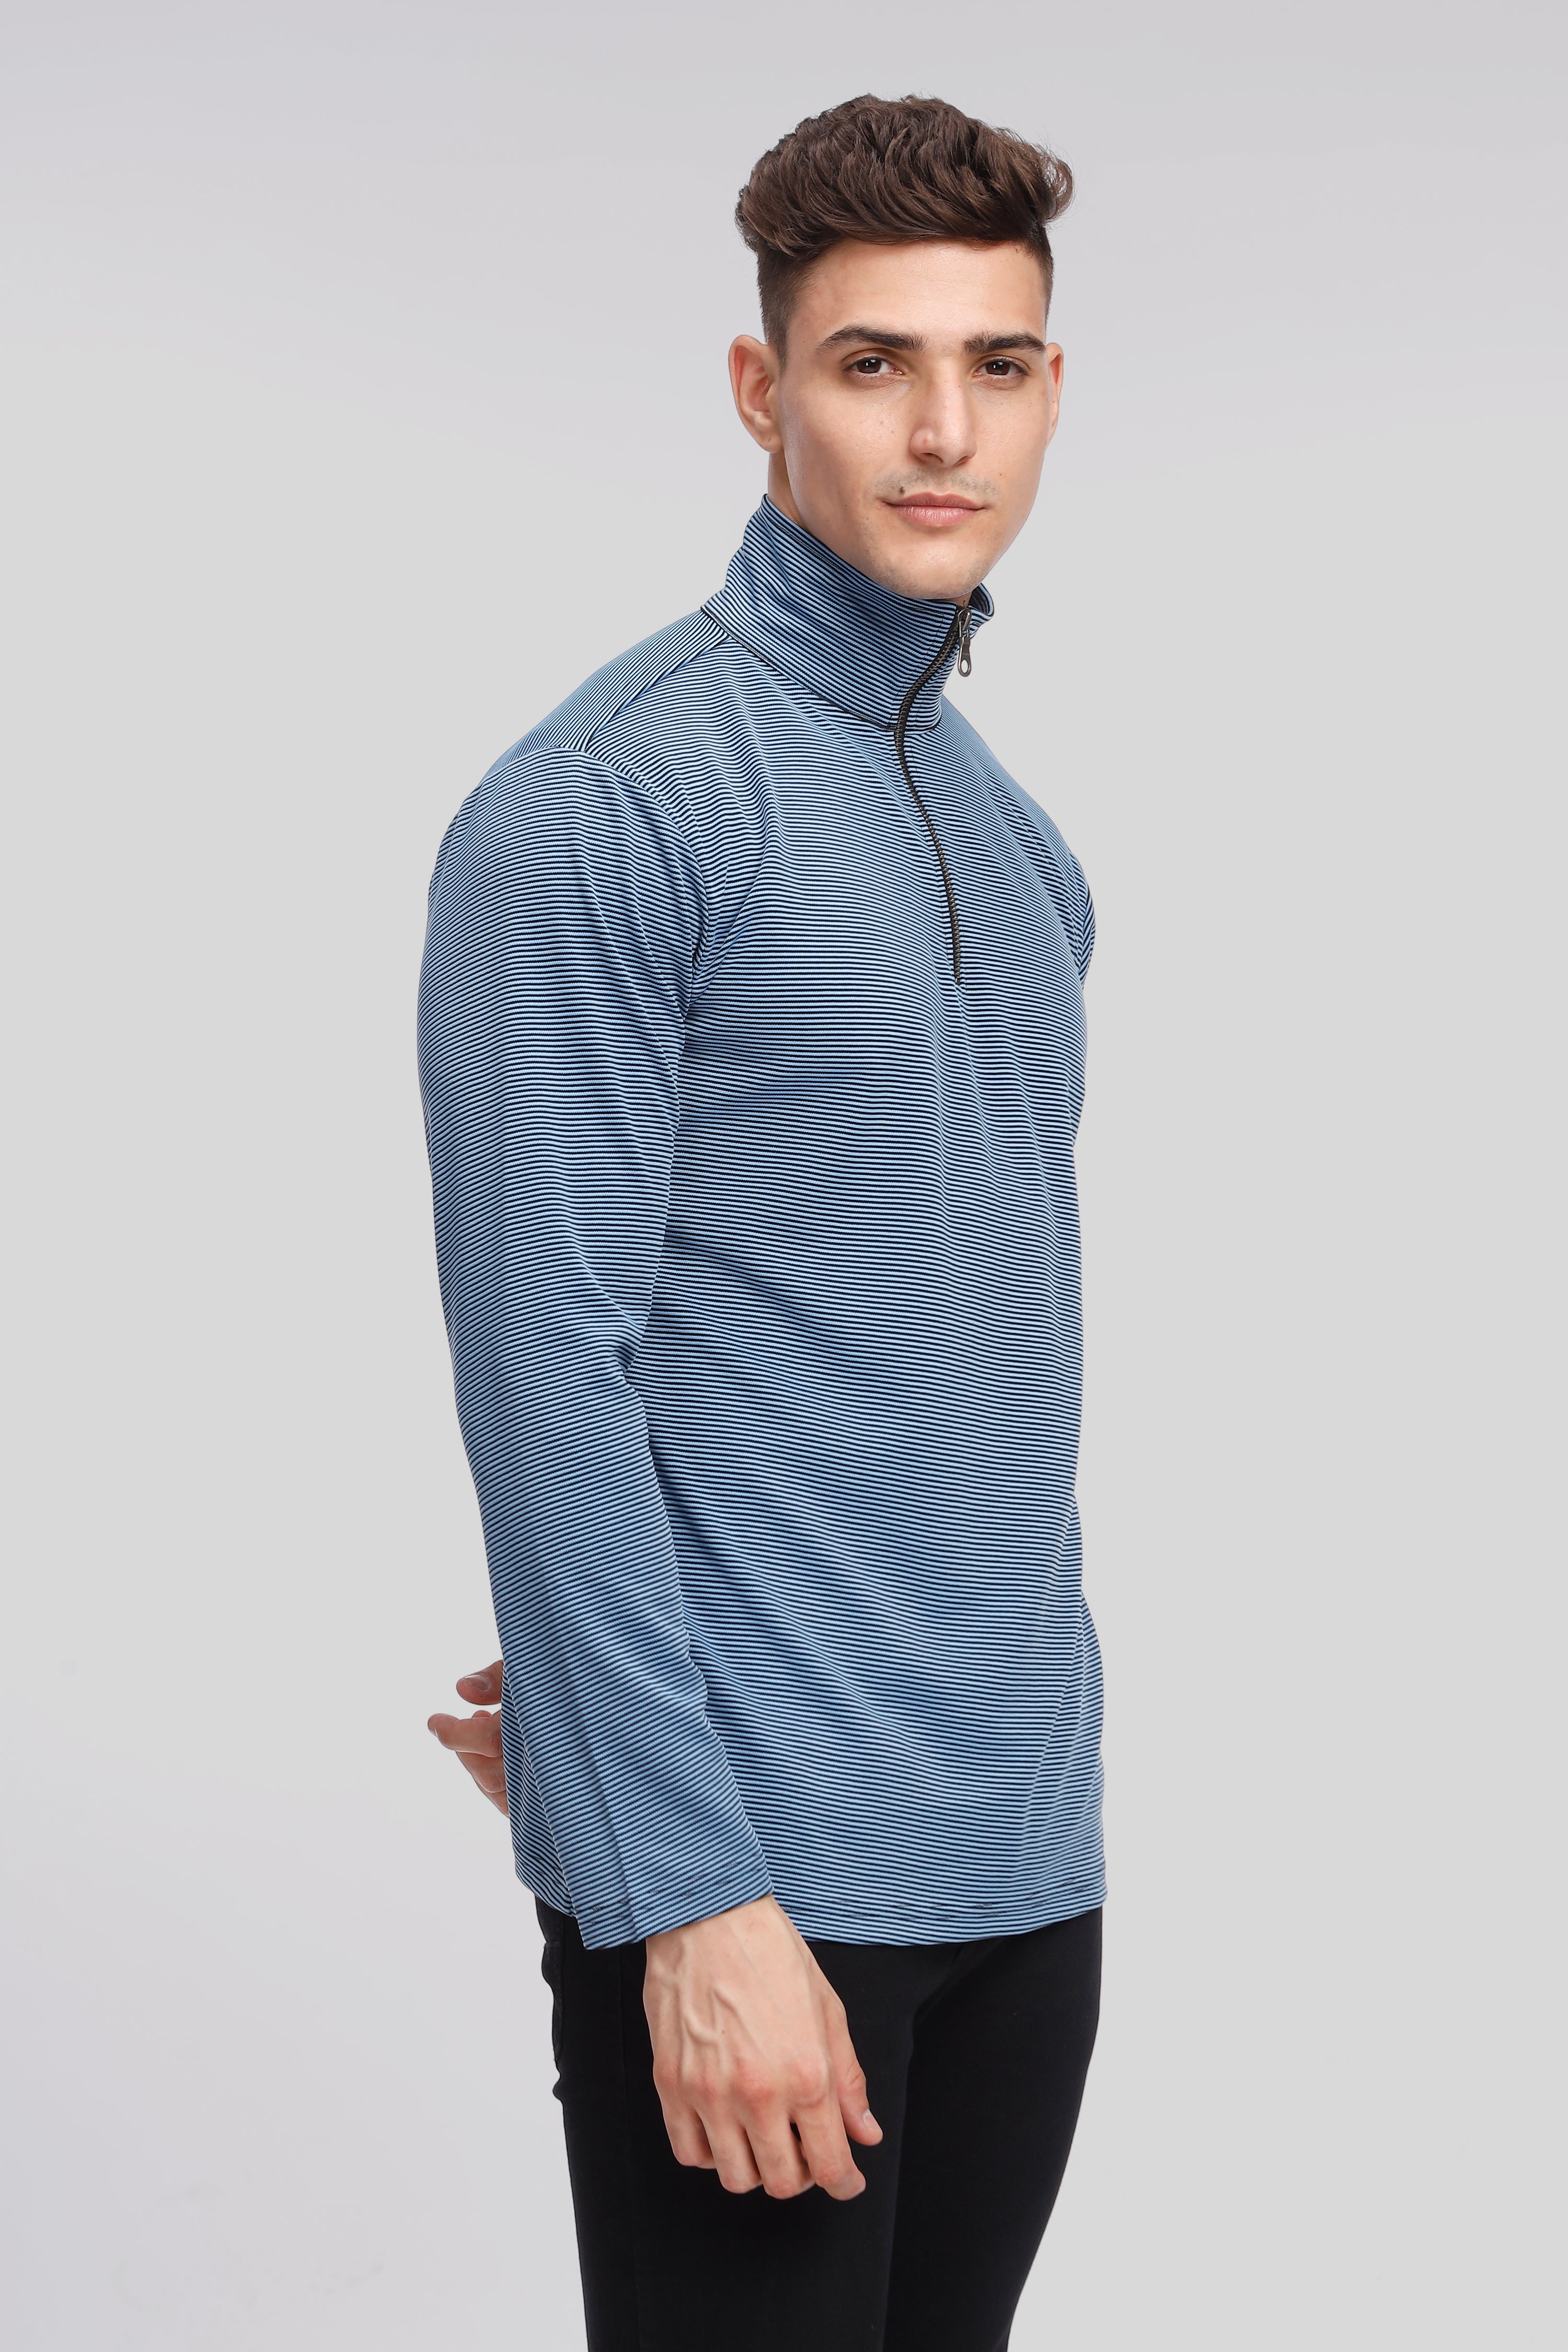 Blue Stripes Self Design Zipper T-Shirt